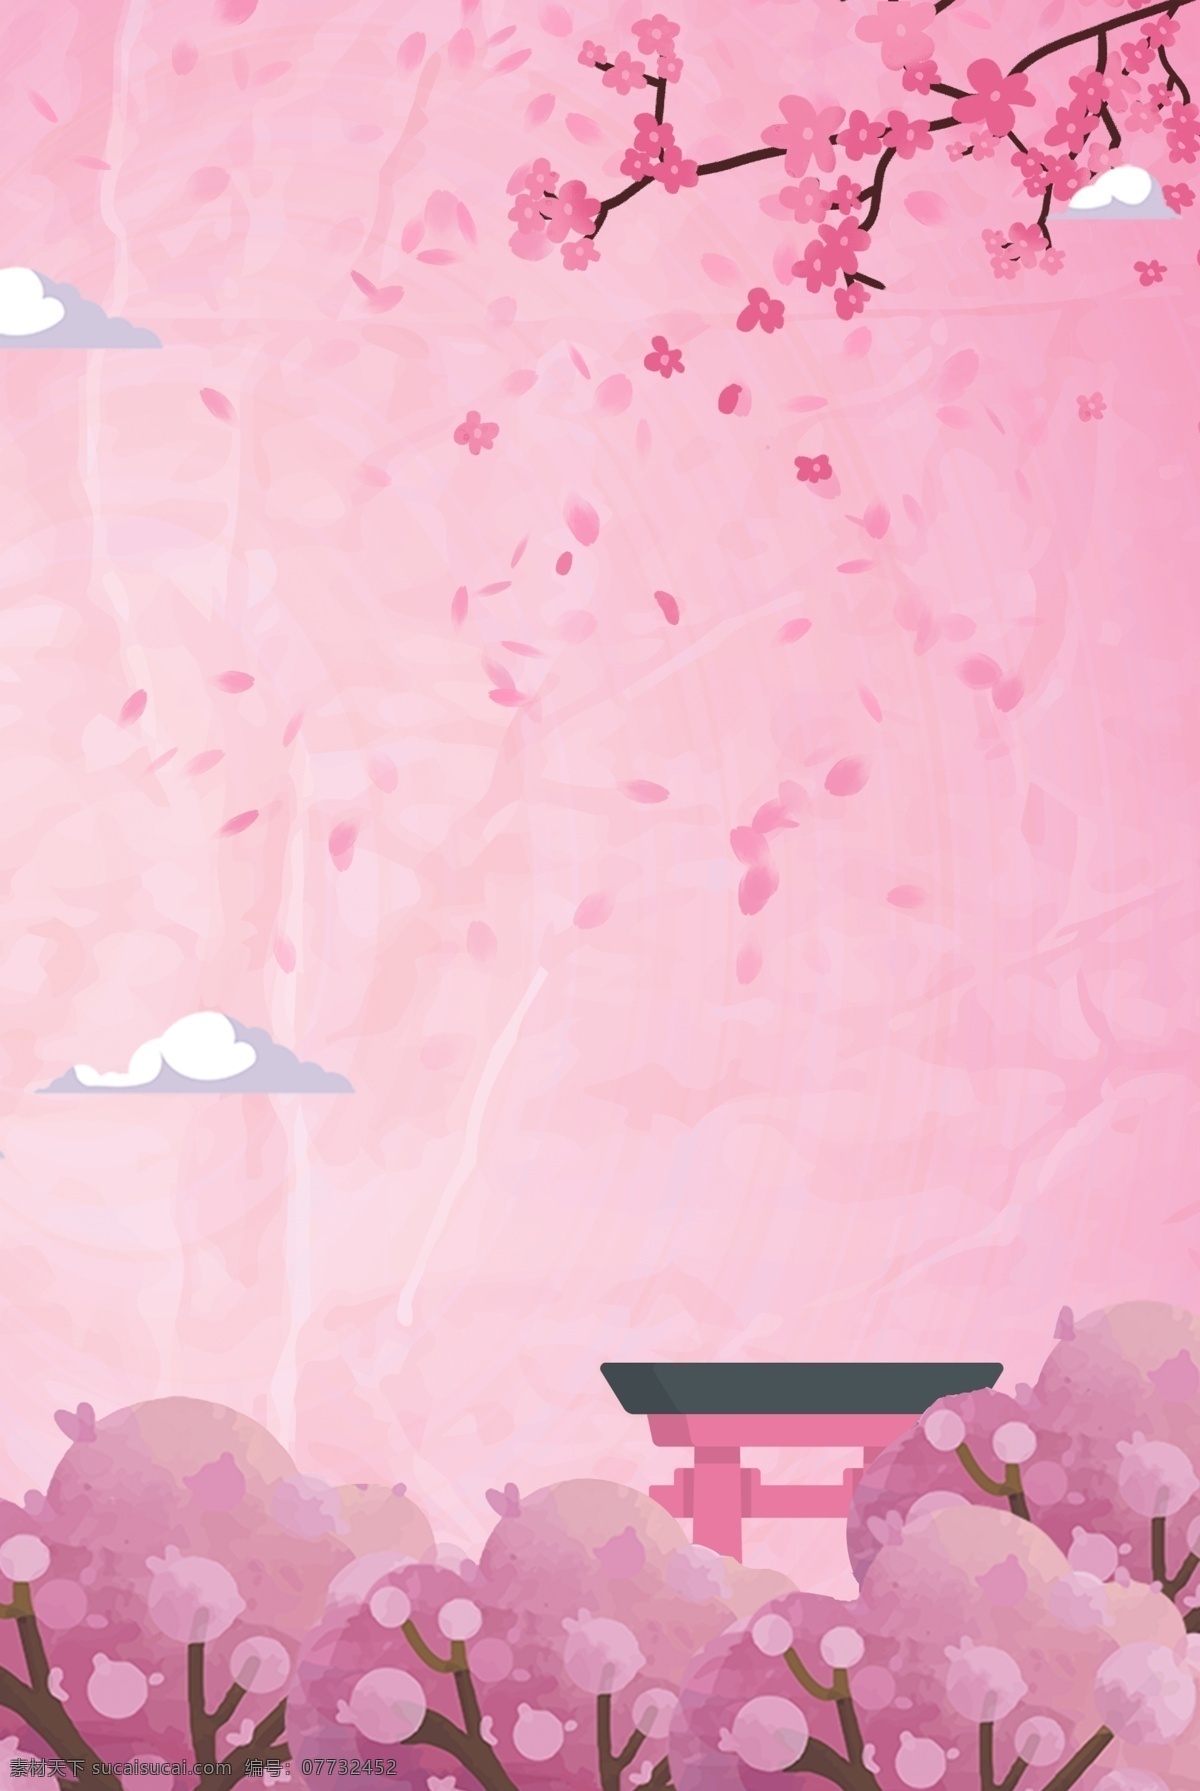 樱花 季 浪漫 粉色 背景 合成 樱花季 樱花节 唯美 日式 花瓣 花朵 创意 简约